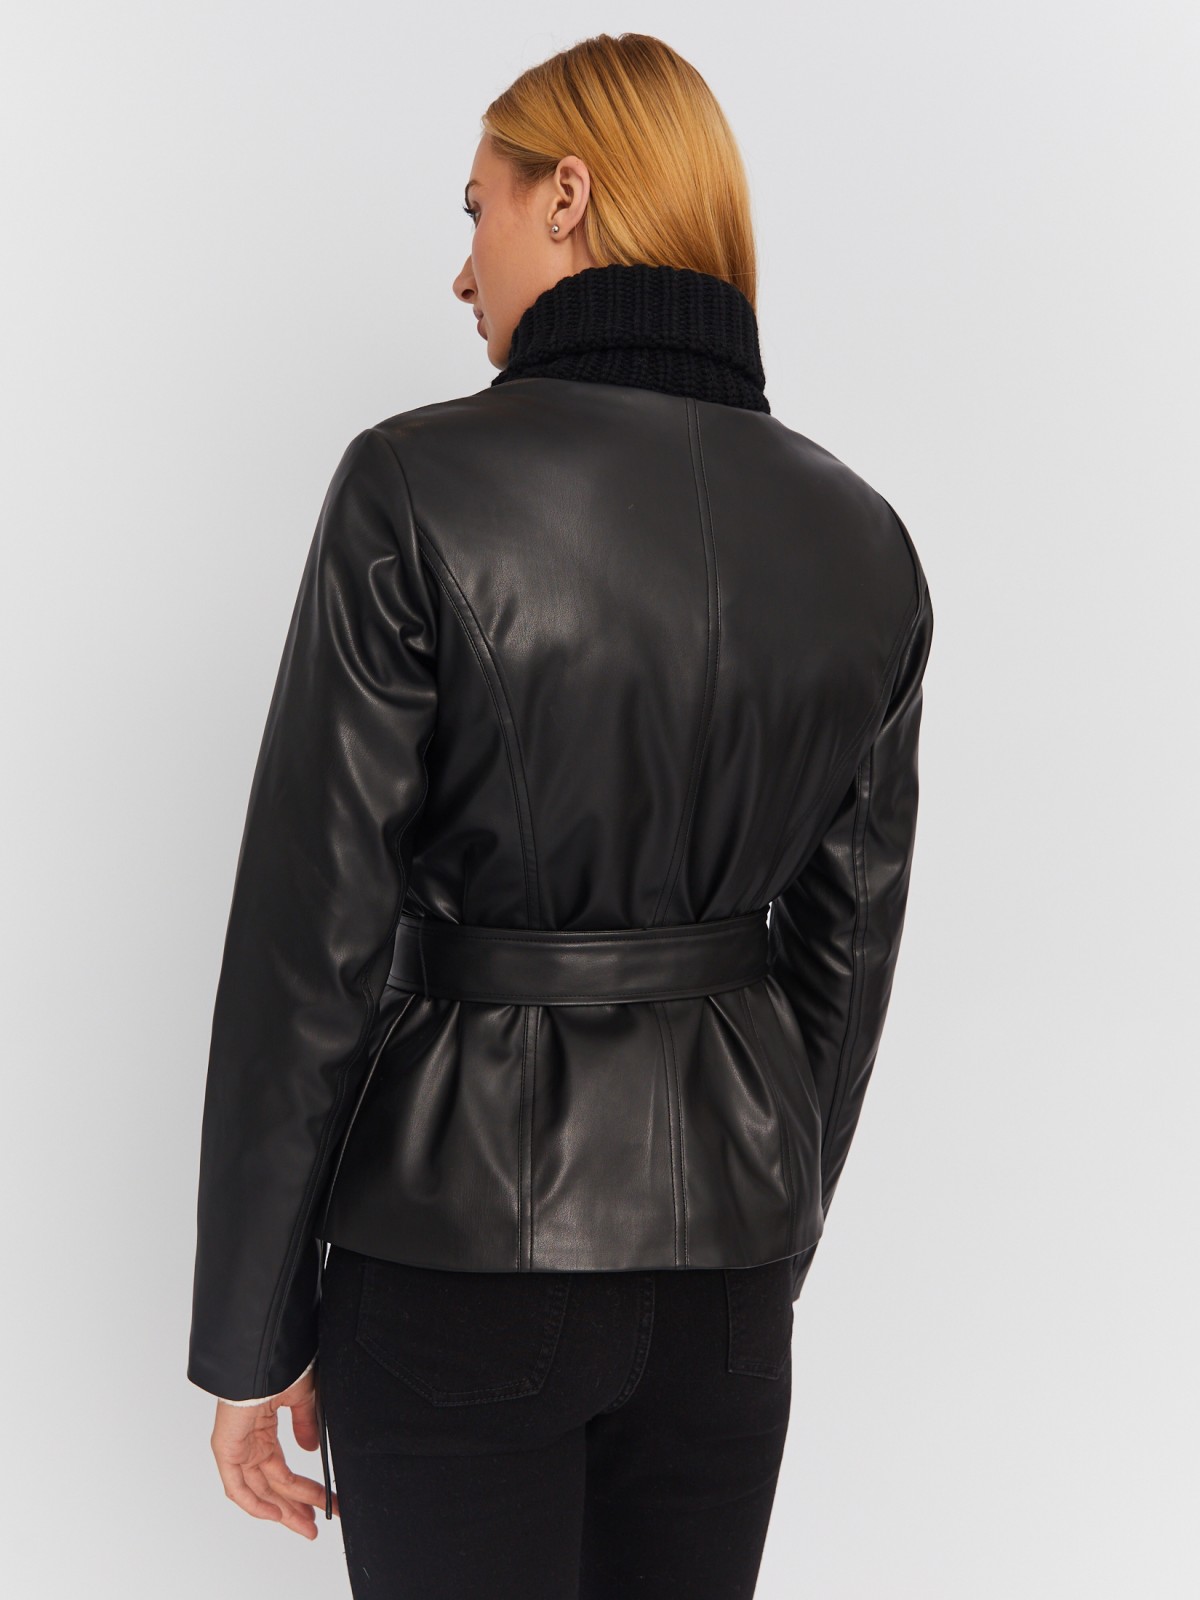 Тёплая куртка-косуха из экокожи на синтепоне с поясом zolla 023335150014, цвет черный, размер M - фото 5